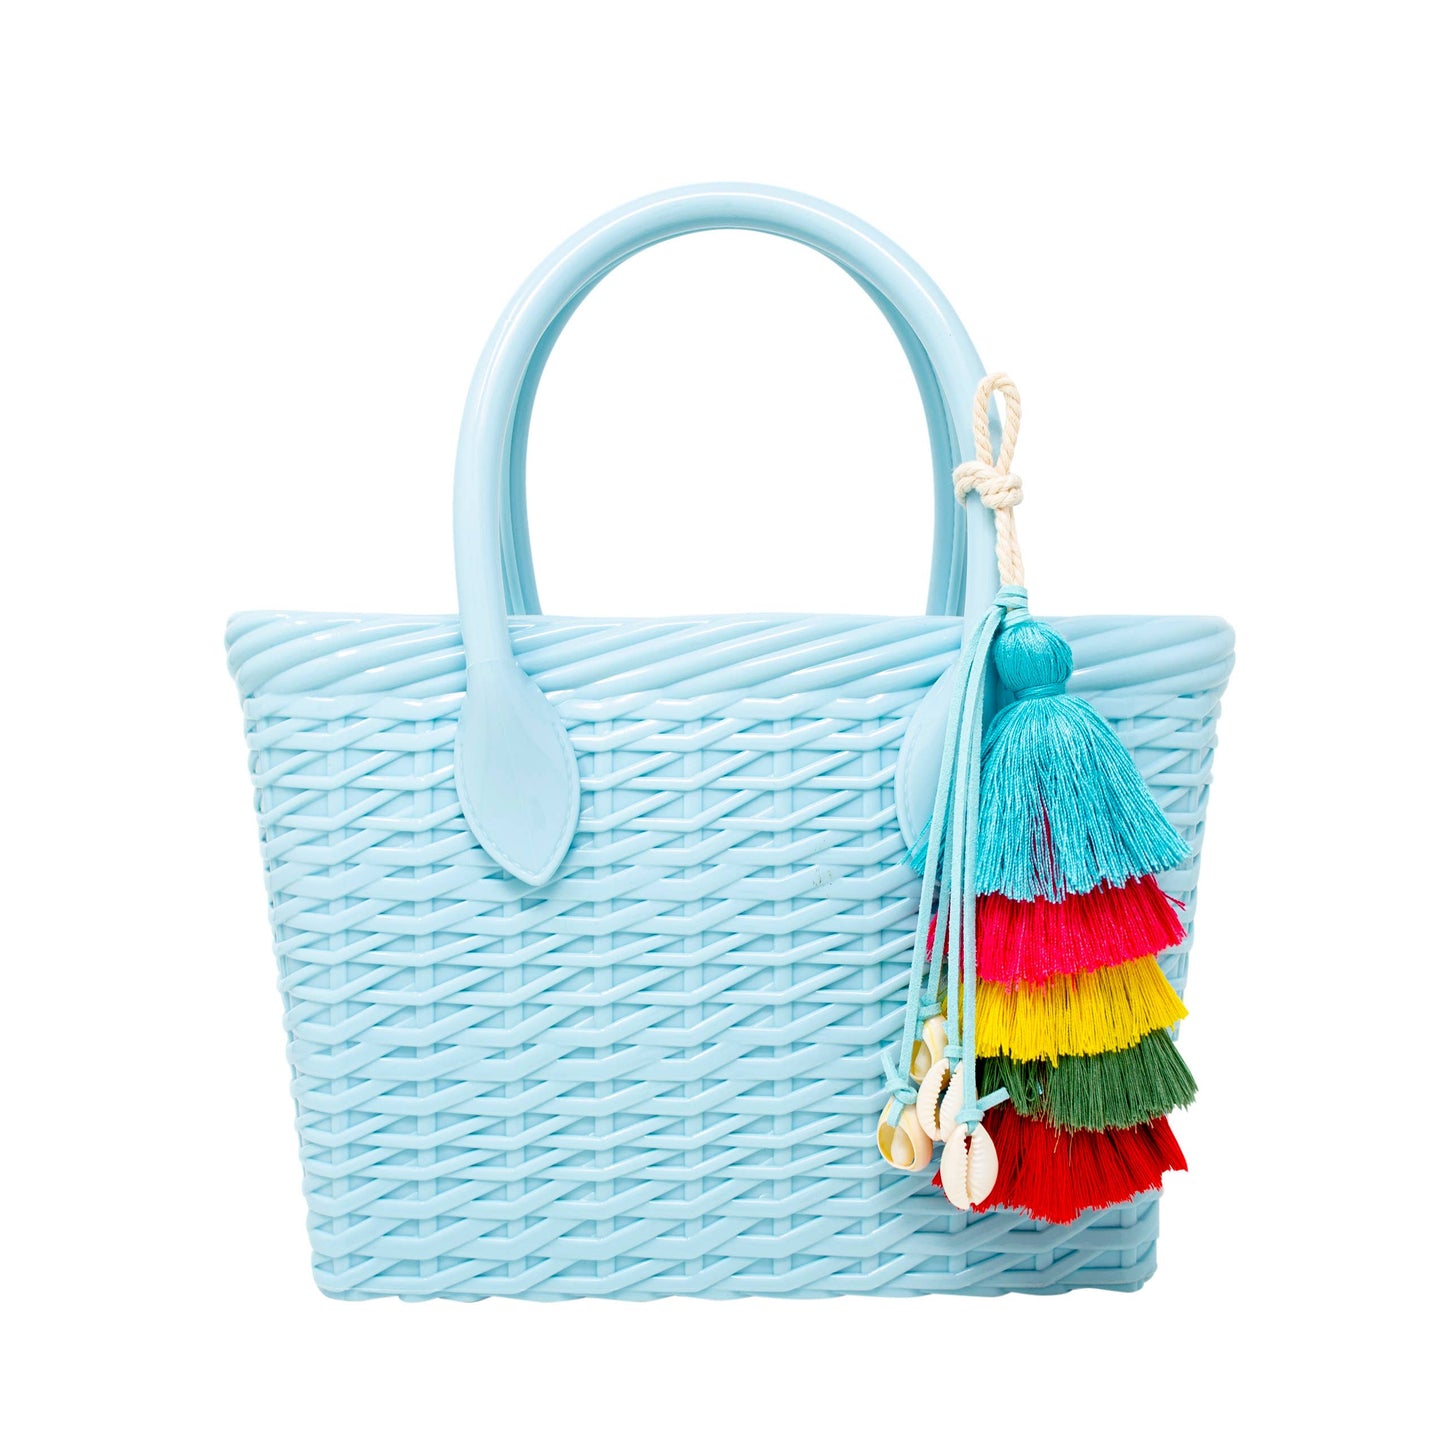 Jelly Weave Tote Bag Sky Blue - Tiny Treats